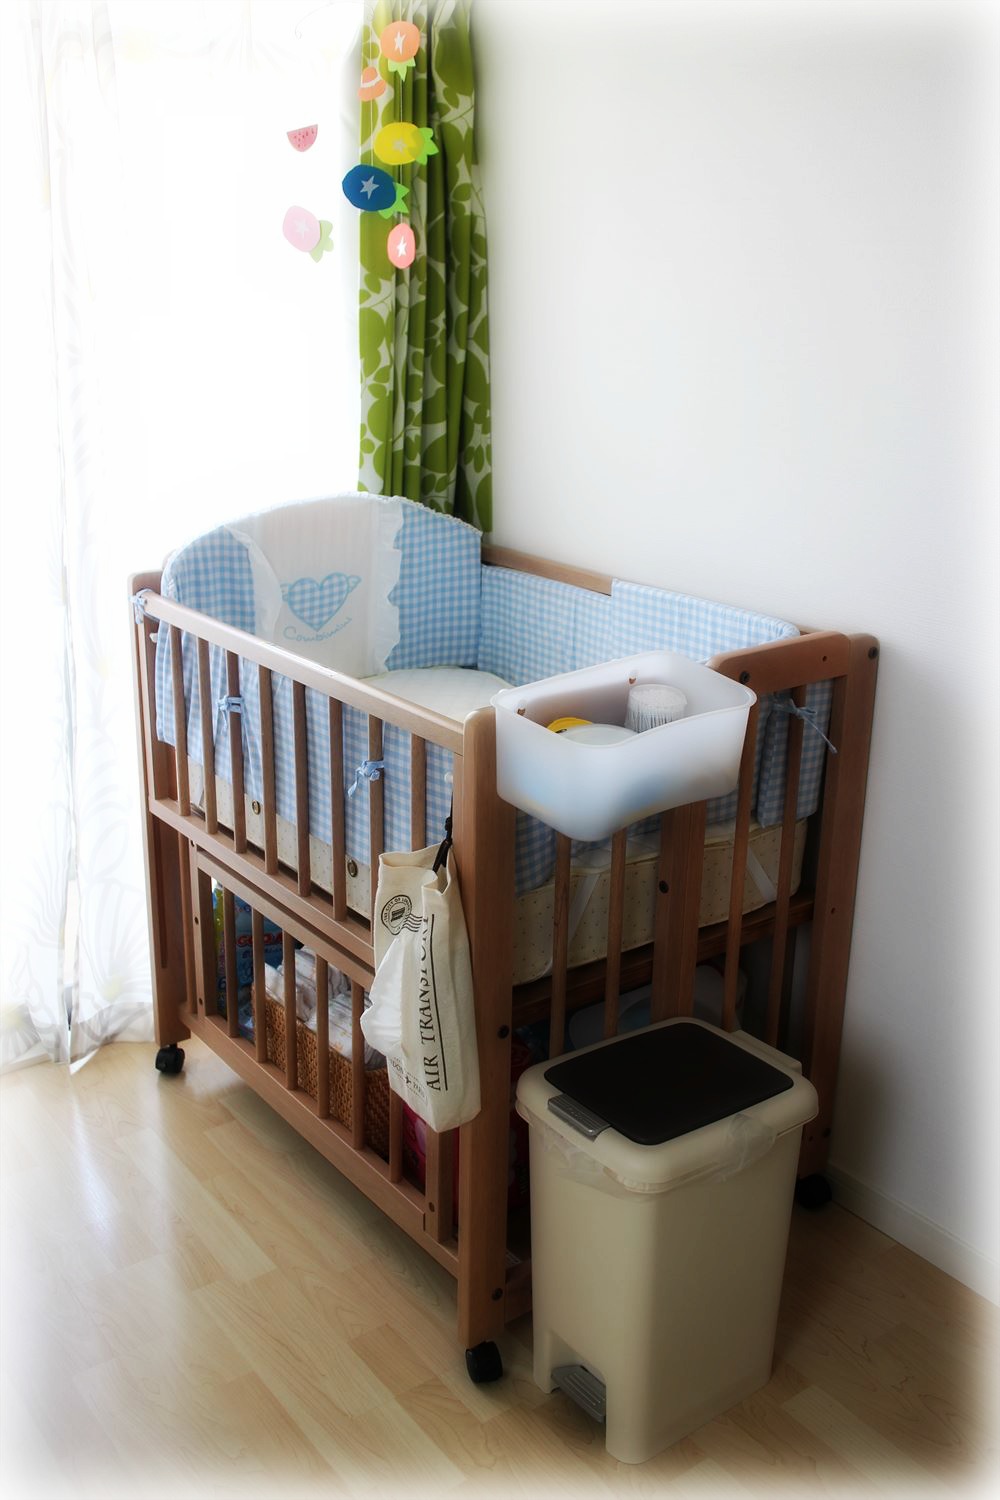 送料無料で安心 ベビー☺️ベビーベッド☺️赤ちゃんの寝具❤ベット❤使いやすい✨収納便利❤ 布団/毛布